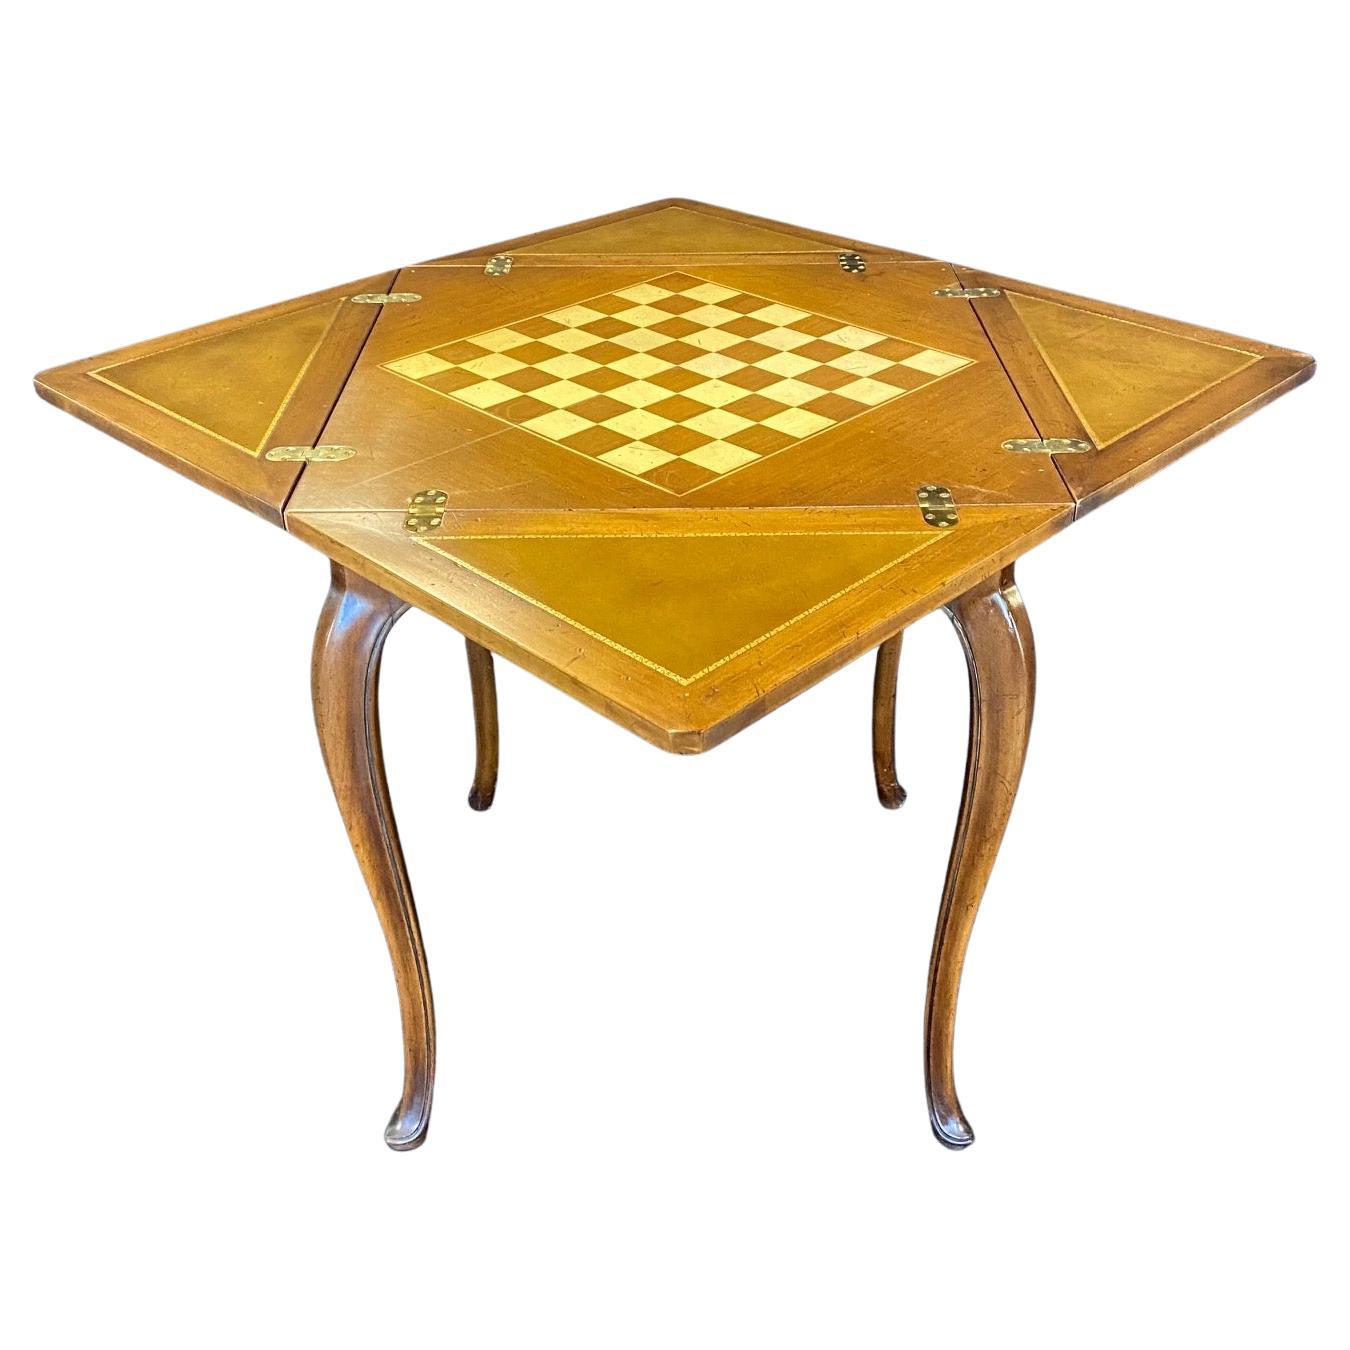 Une table à cartes mouchoir classique de style Louis XV qui se transforme astucieusement d'une table d'appoint plus étroite en une surface de jeu carrée avec des feuilles de cuir gaufré, le tout soutenu par des pieds cabriole minces et élégants.